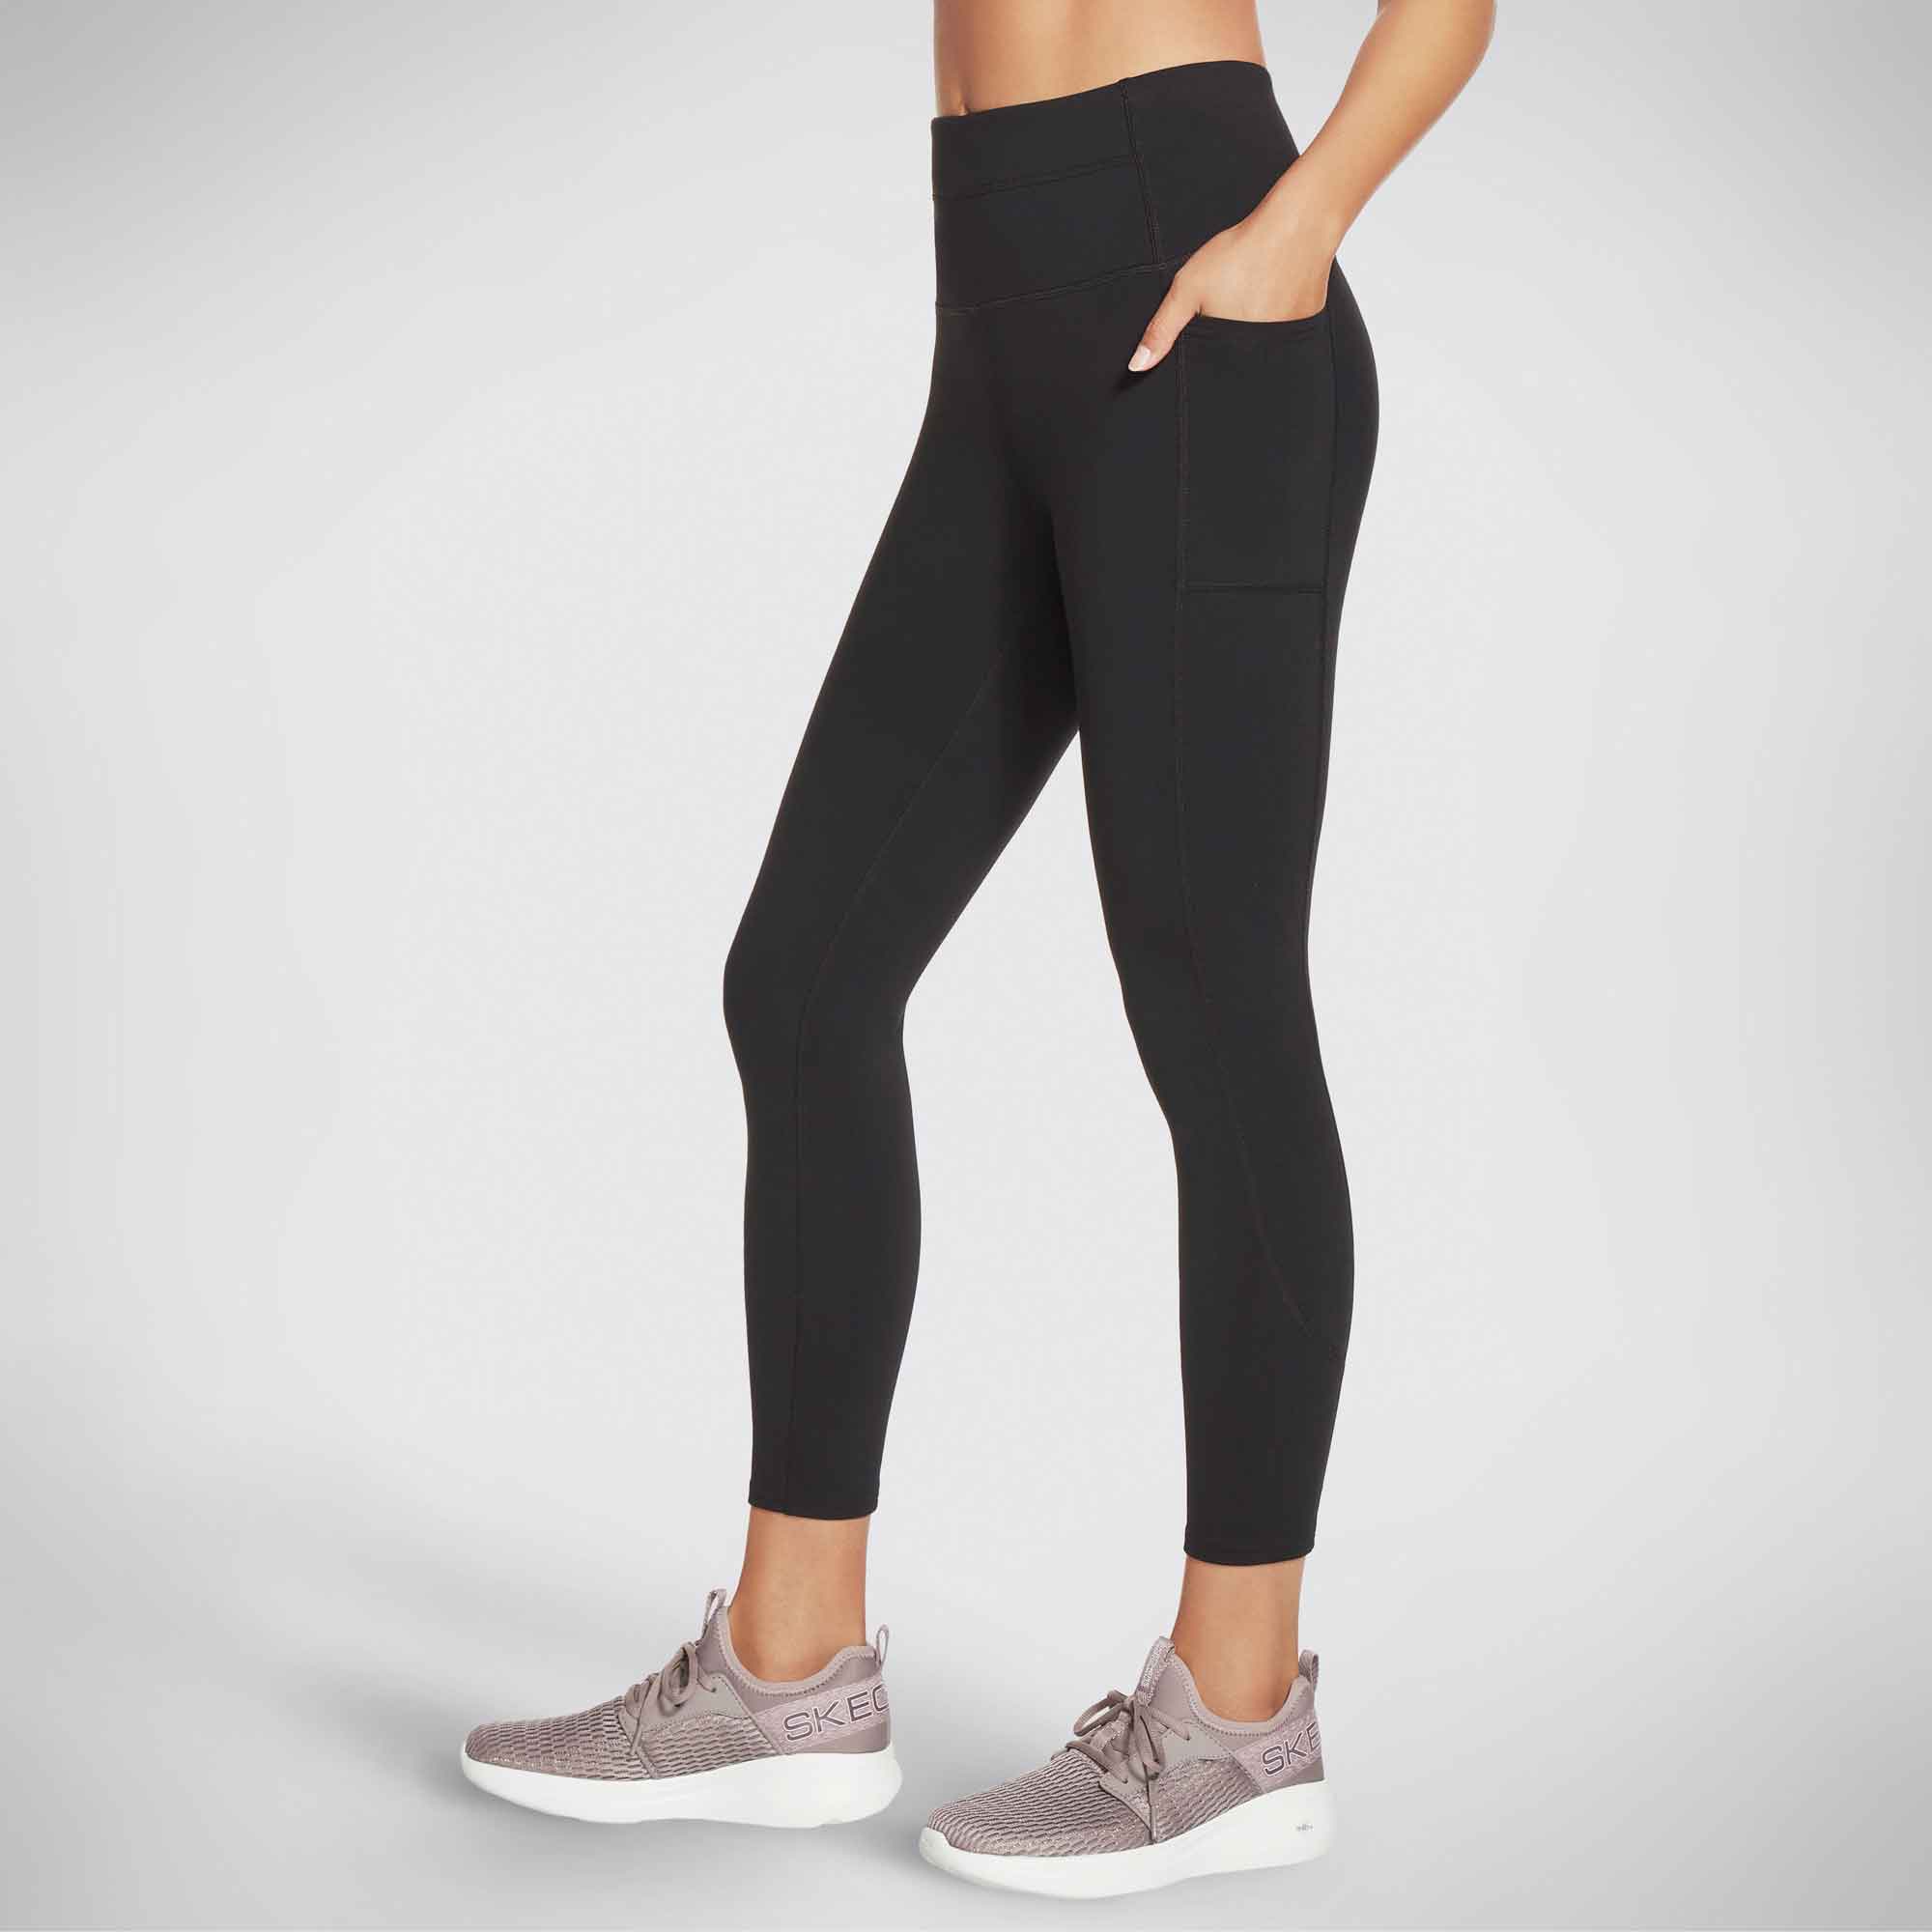 Skechers Women's Walk Go Flex High Waisted 2-Pocket Yoga Legging